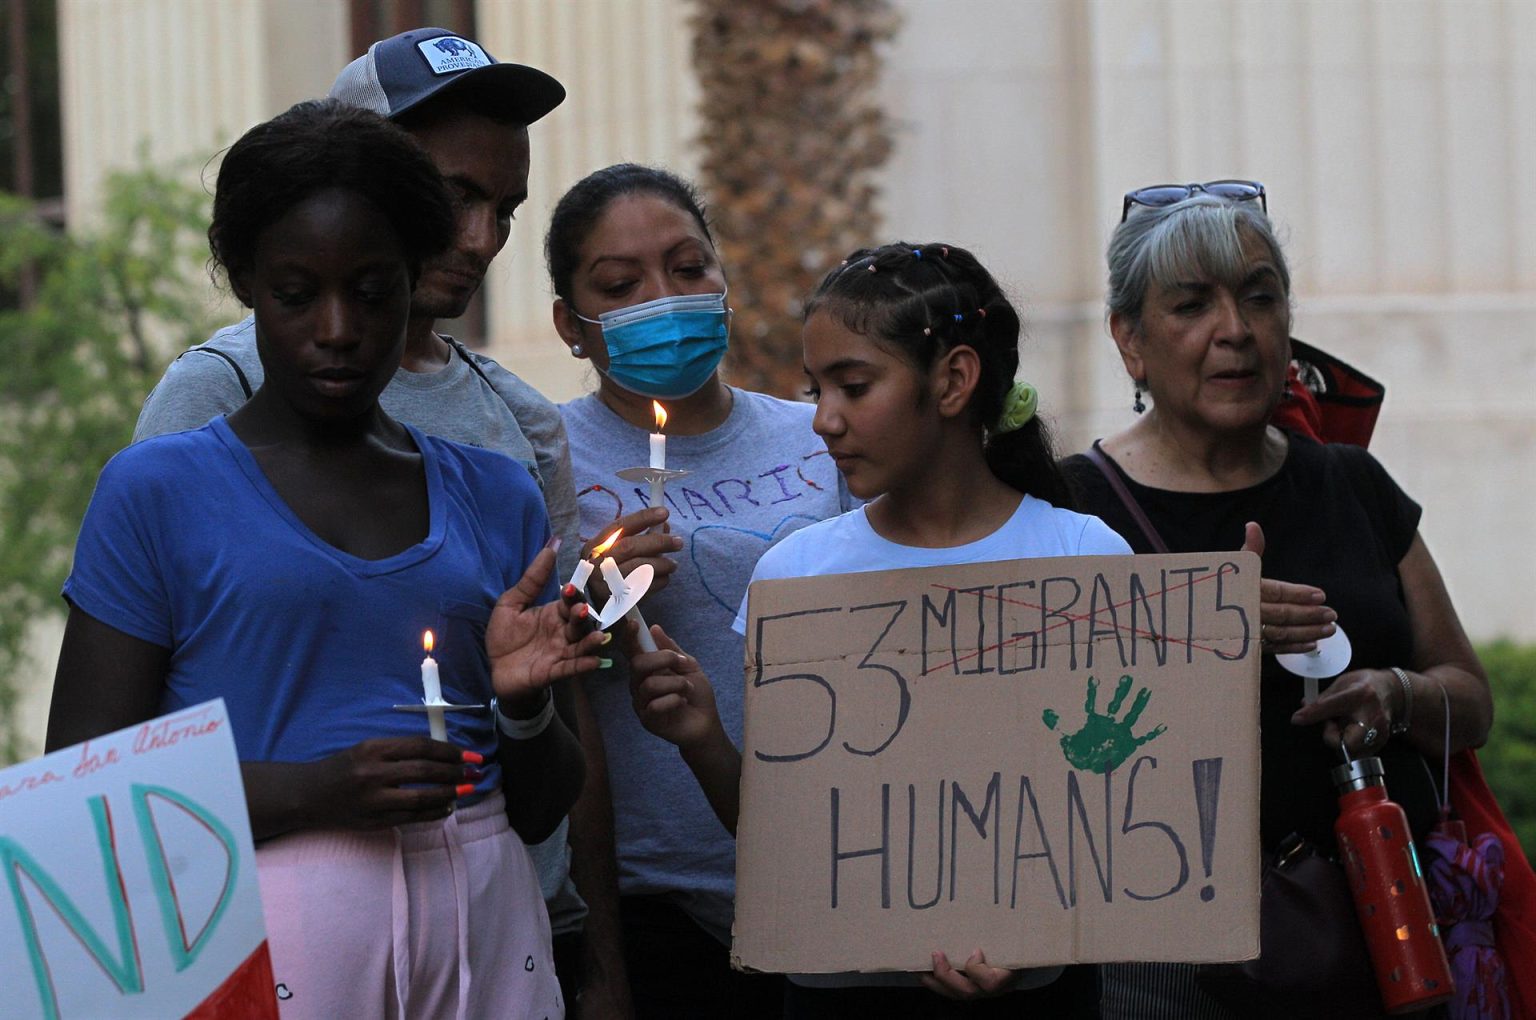 Imagen de archivo que muestra a un grupo de personas participando en una vigilia en memoria de los migrantes fallecidos dentro en un trailer, en El Paso,Texas (Estados Unidos). EFE/ Luis Torres